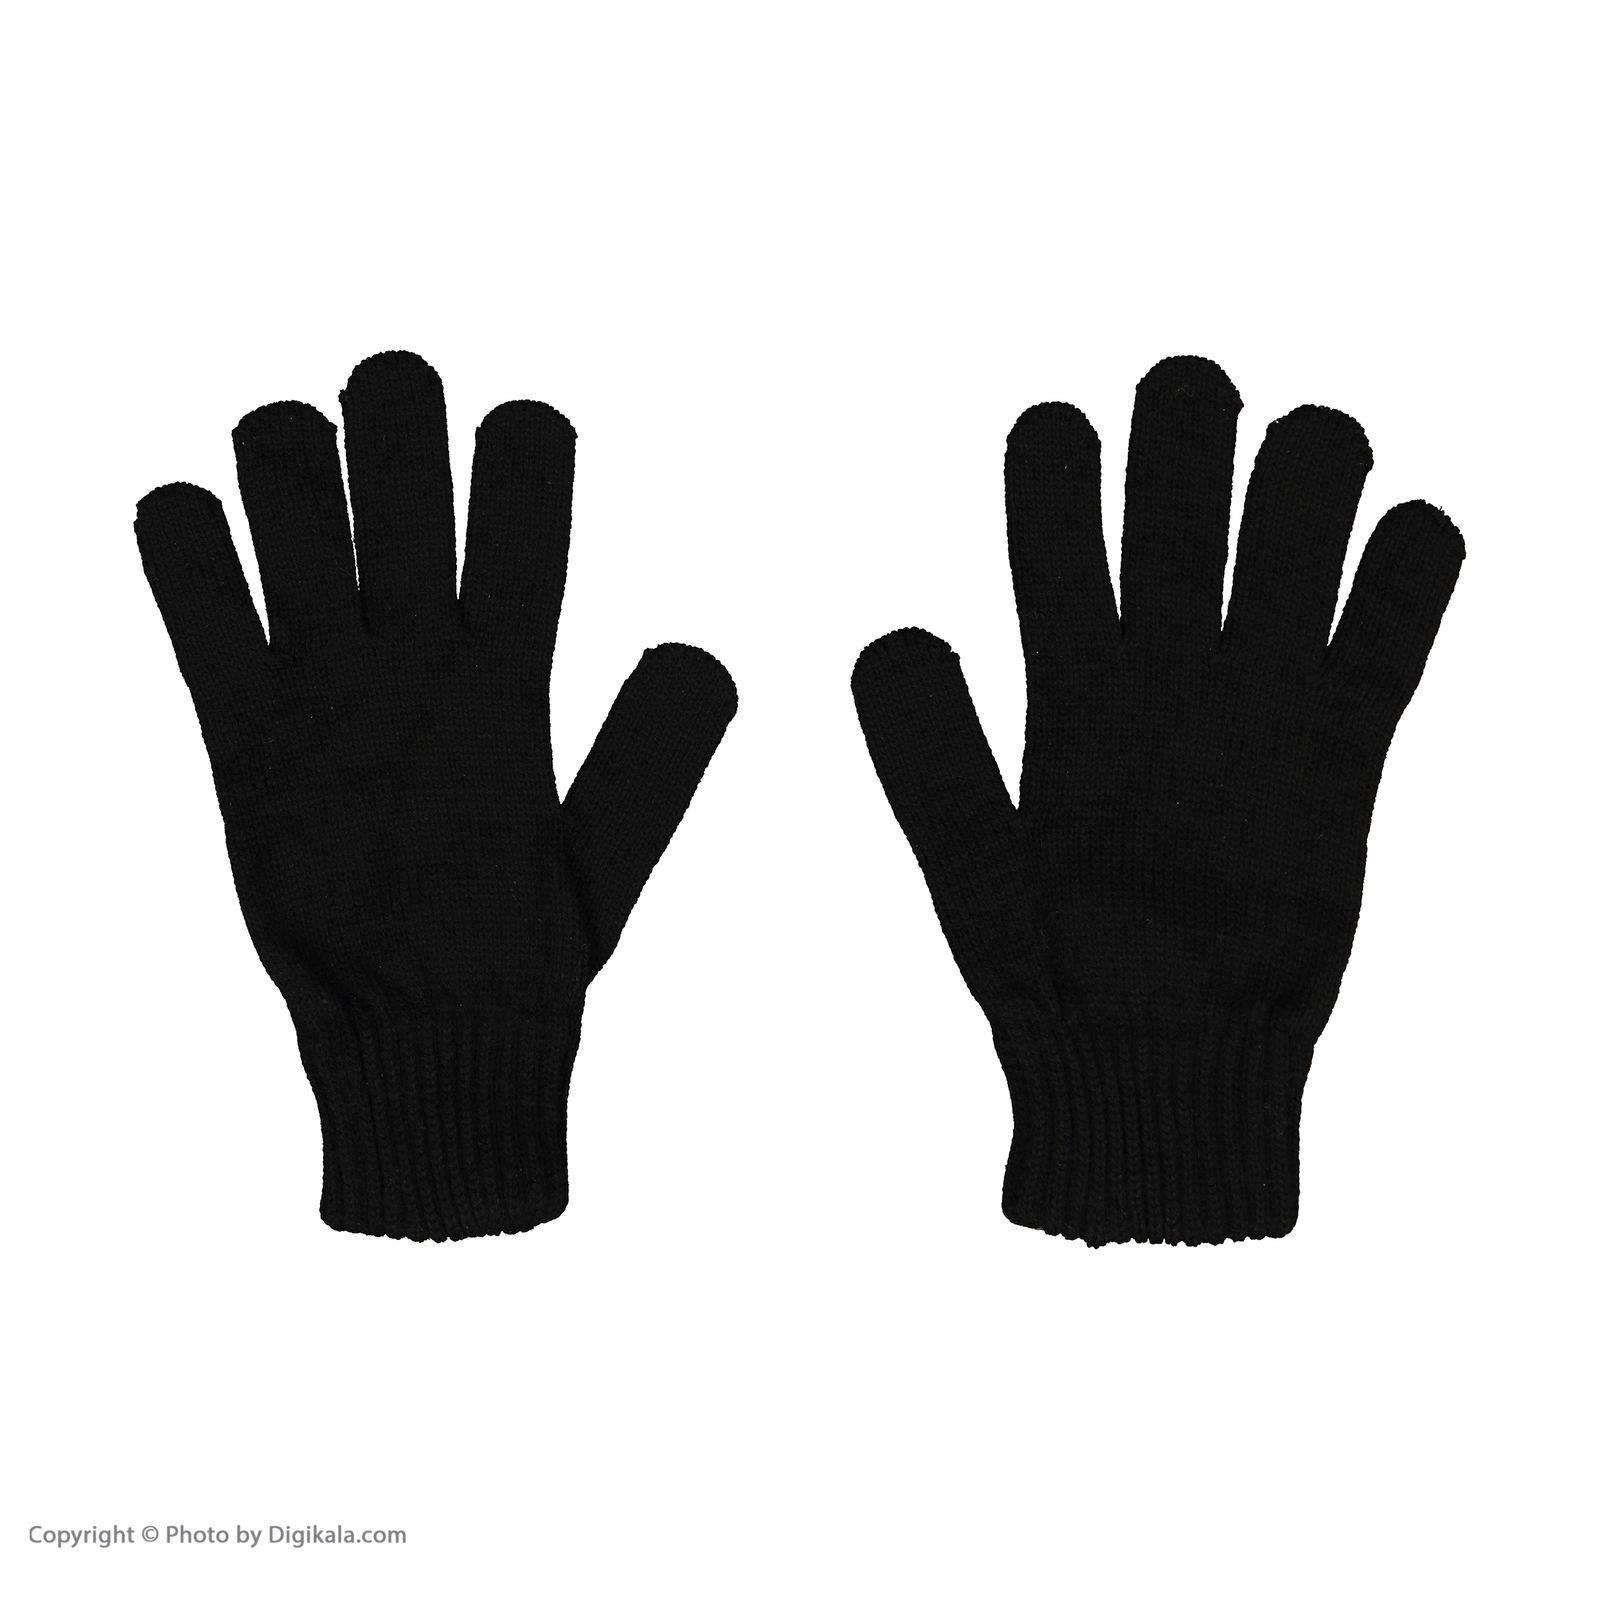 دستکش مردانه کینتیکس مدل 100223998 Black -  - 3